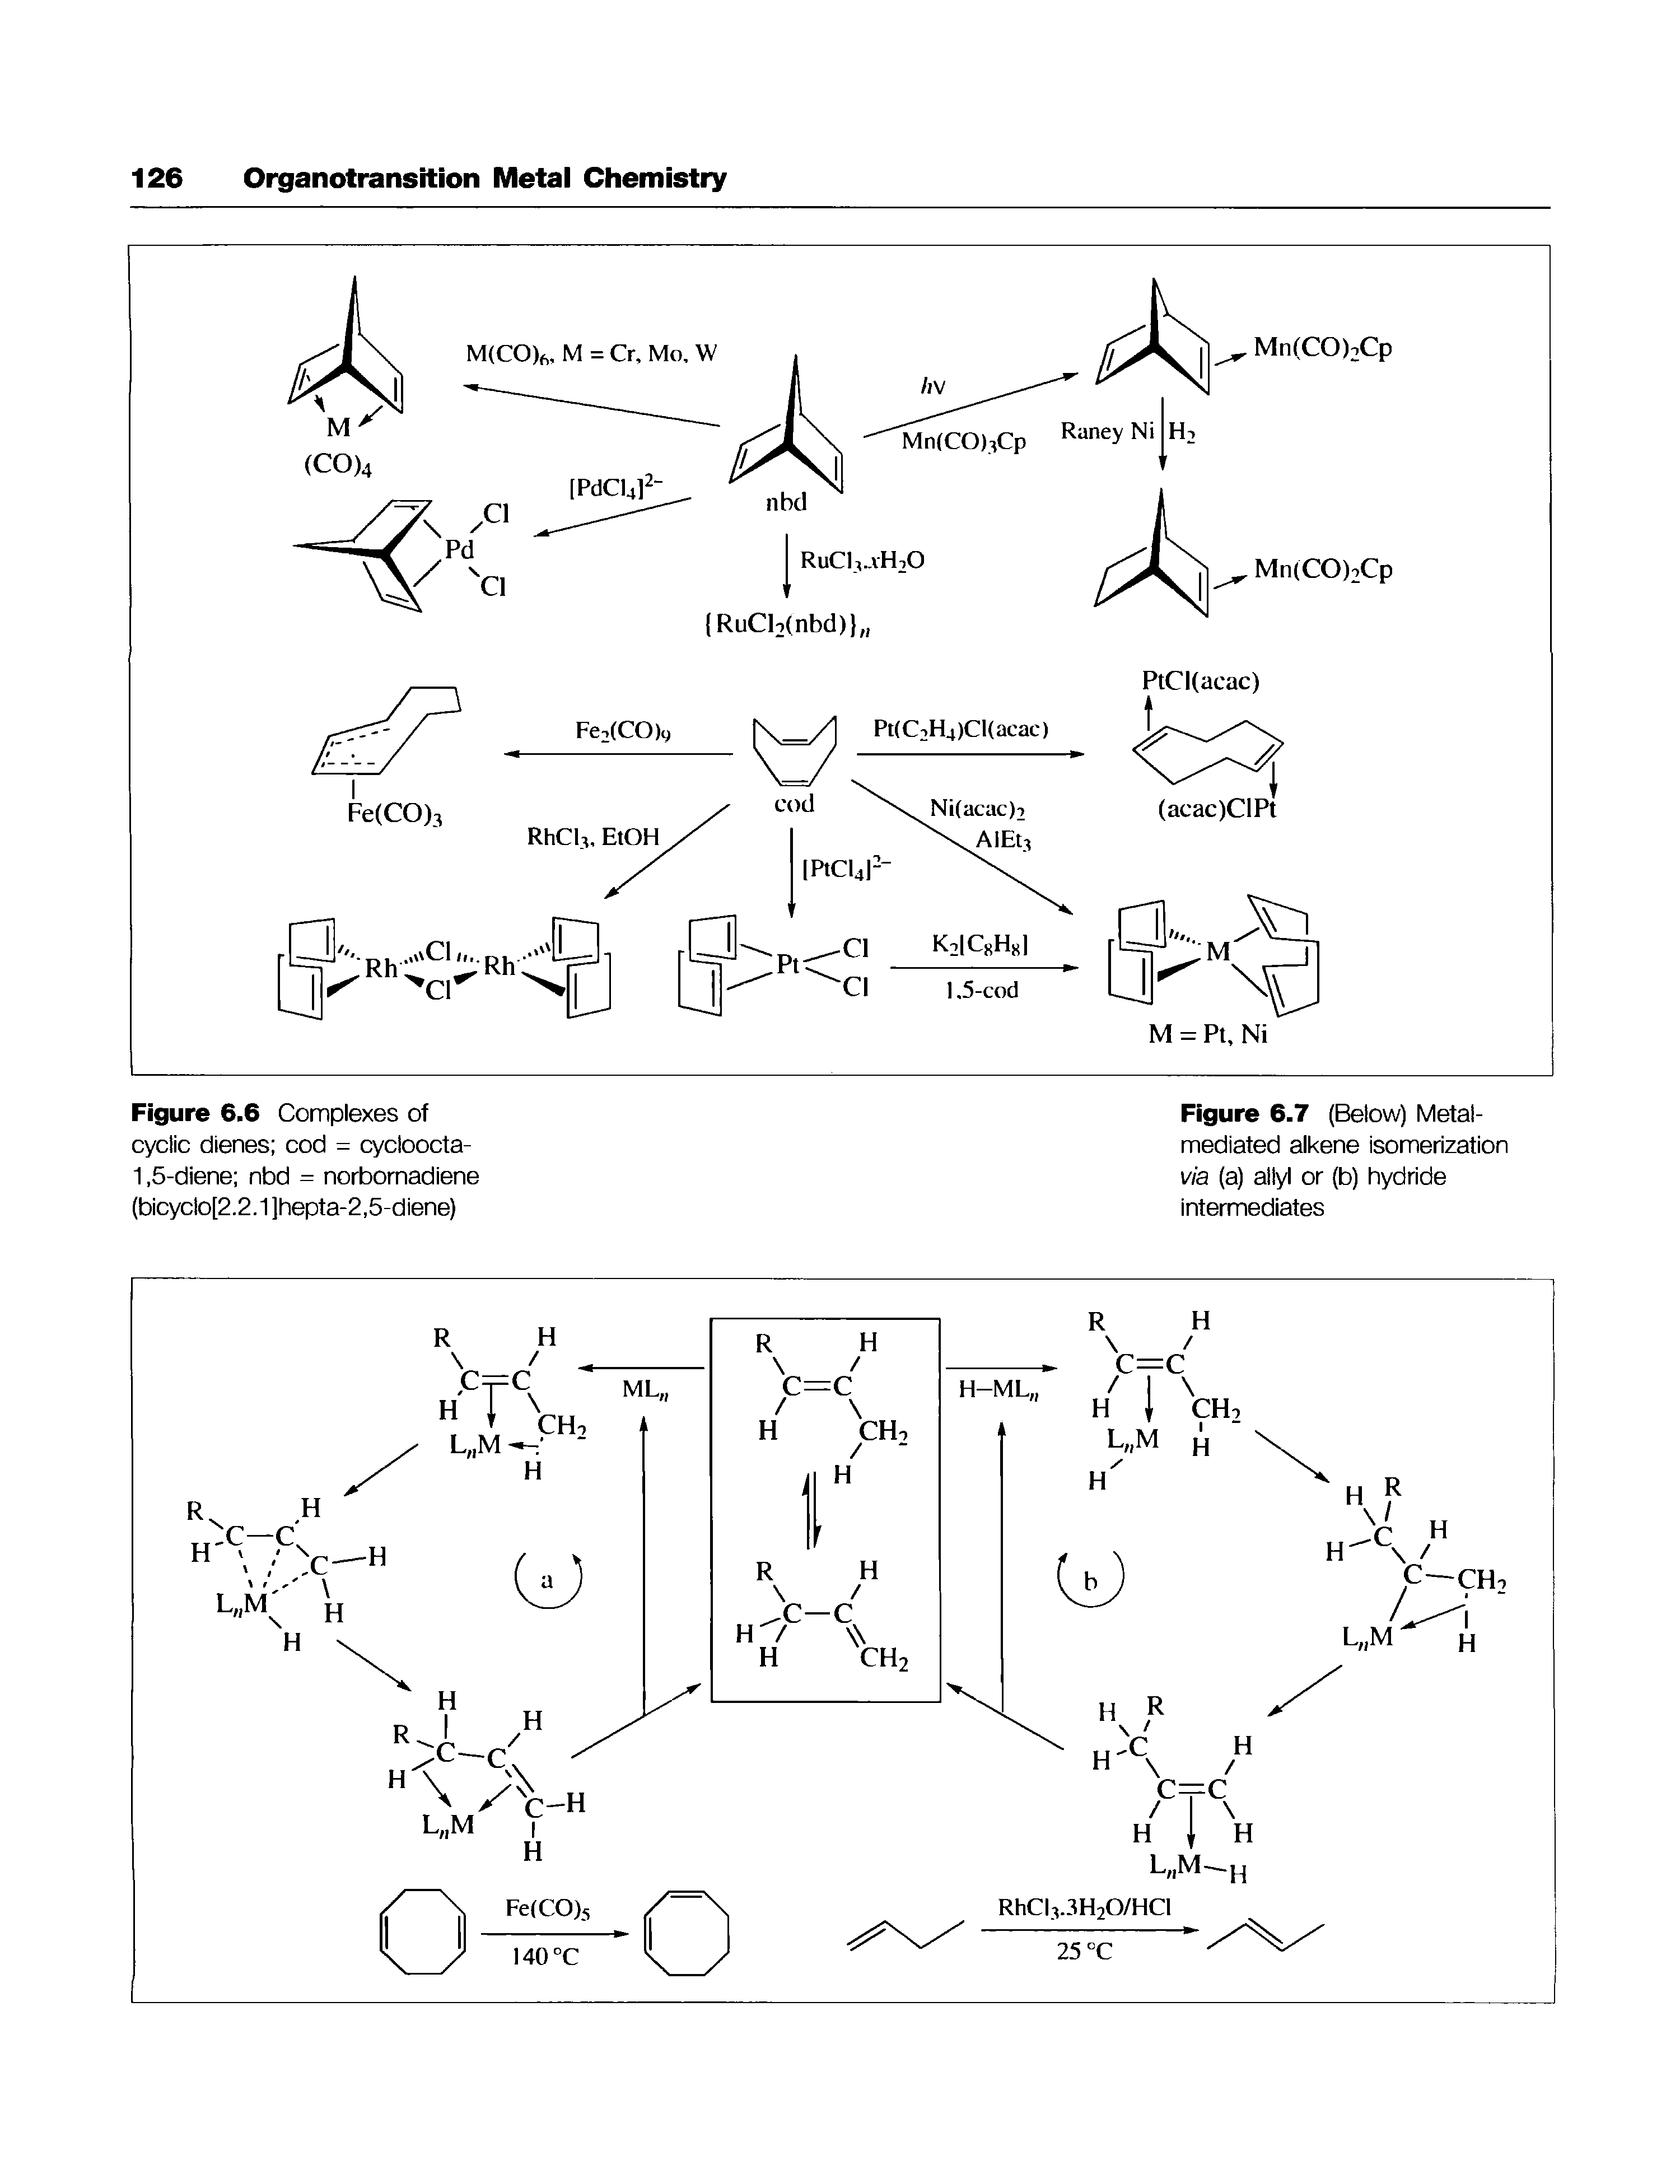 Figure 6.7 (Below) Metal-mediated alkene isomerization via (a) allyl or (b) hydride intermediates...